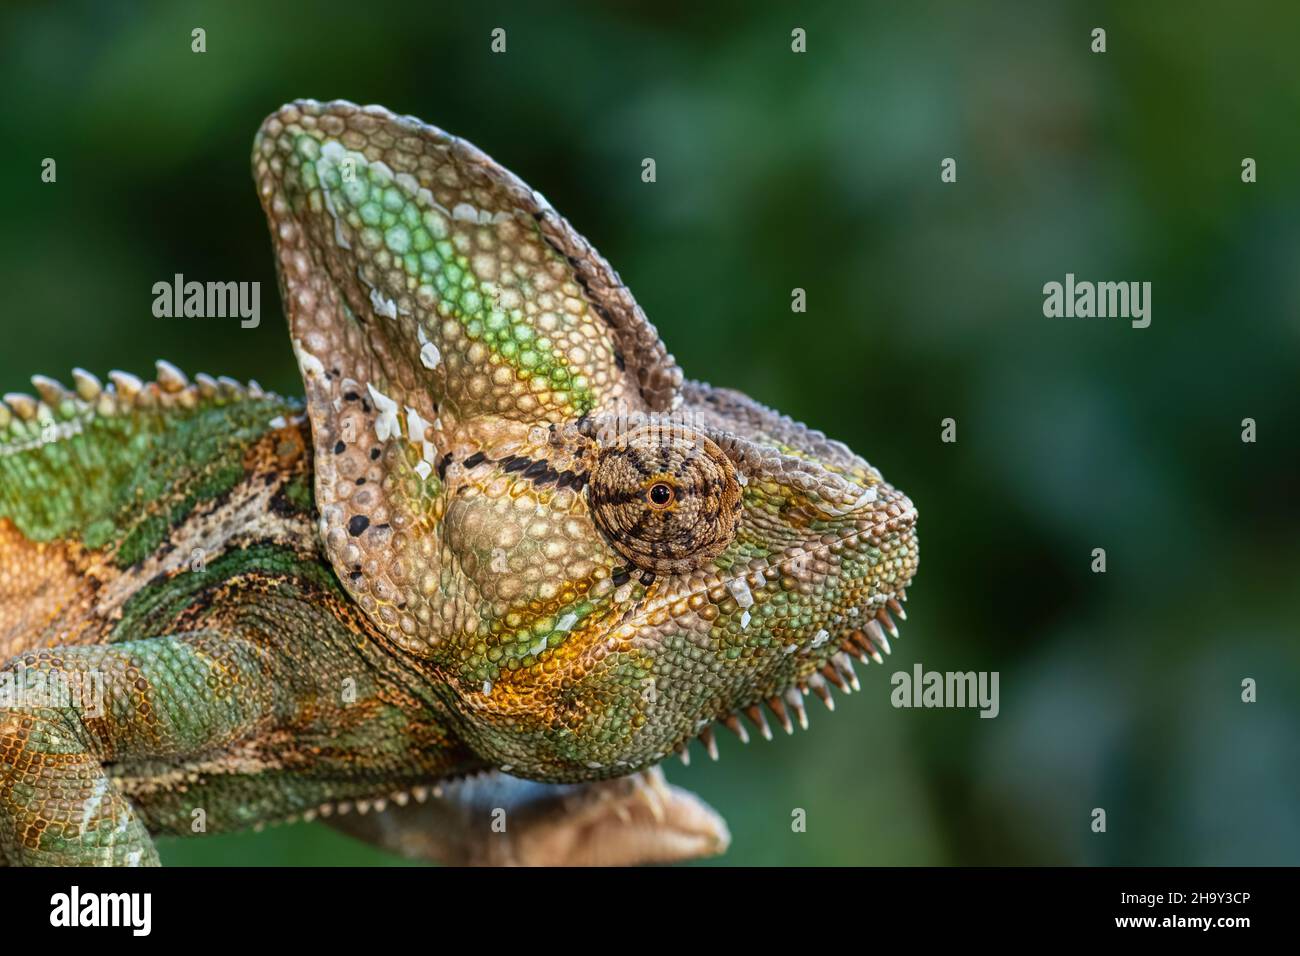 Chameleon velato - Chamaeleo calyptratus, grande lucertola colorata bella da cespugli e foreste della penisola araba, Yemen e Arabia Saudita. Foto Stock